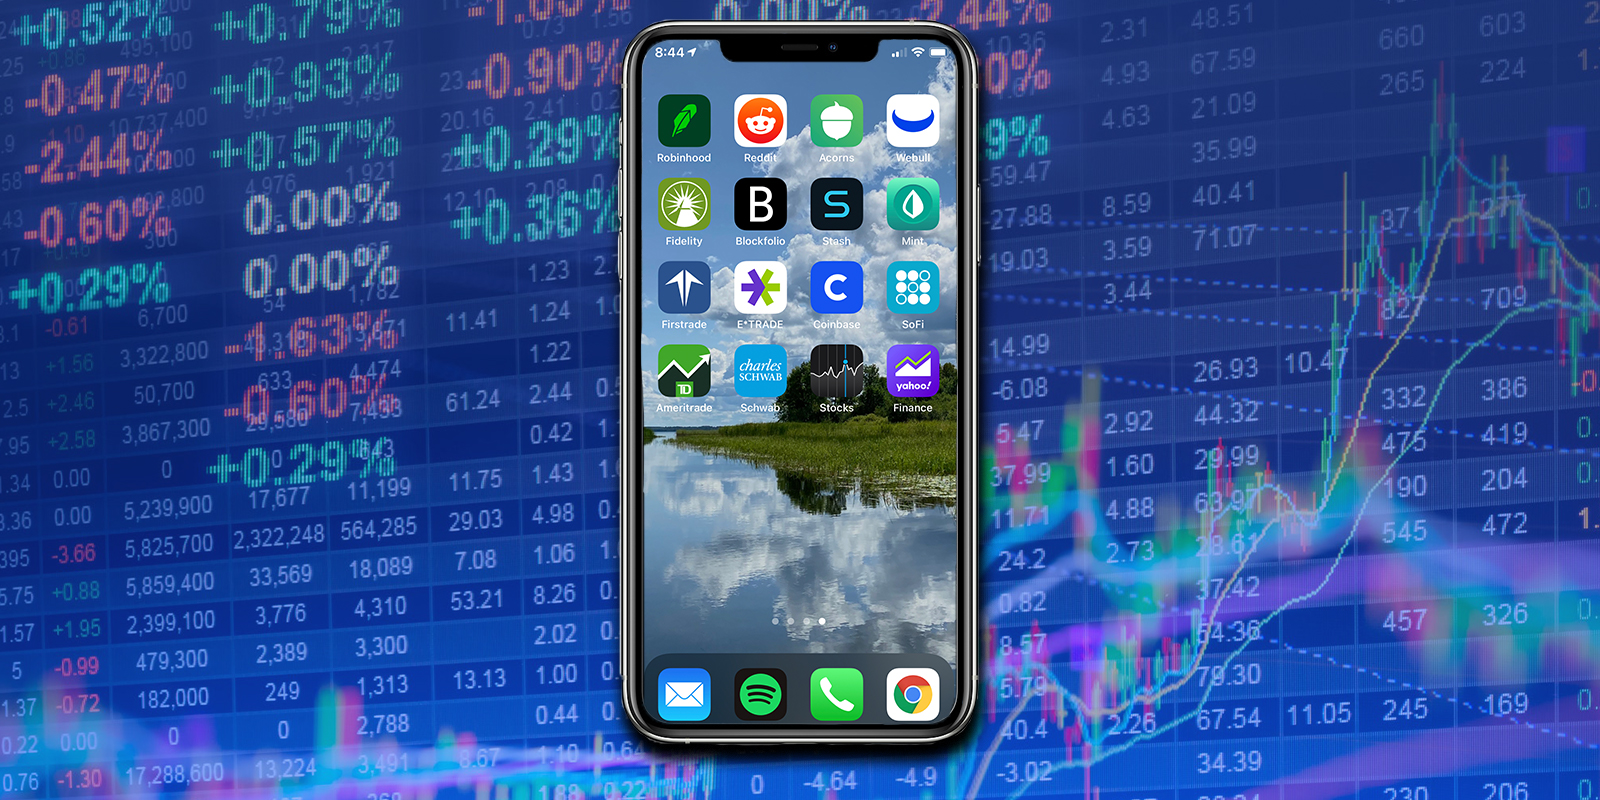 best stock trading app